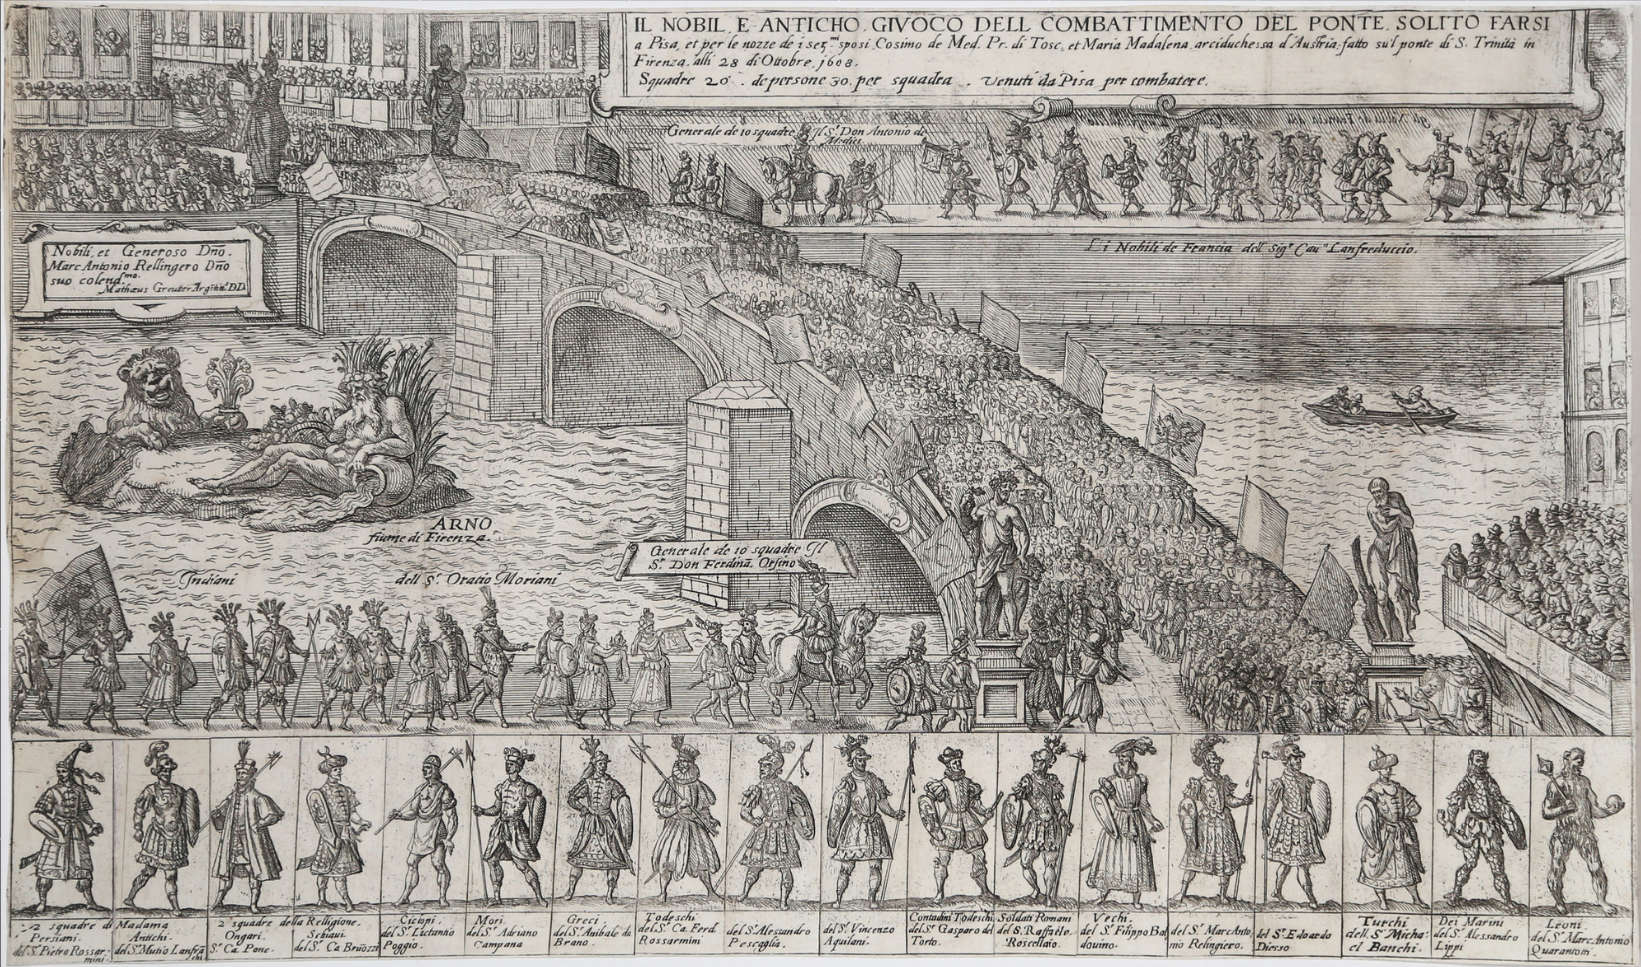 Matthäus Greuter, Il nobil e antico giuoco del combattimento del ponte solito farsi a Pisa... (1608 ; eau-forte, 273 x 499 mm)